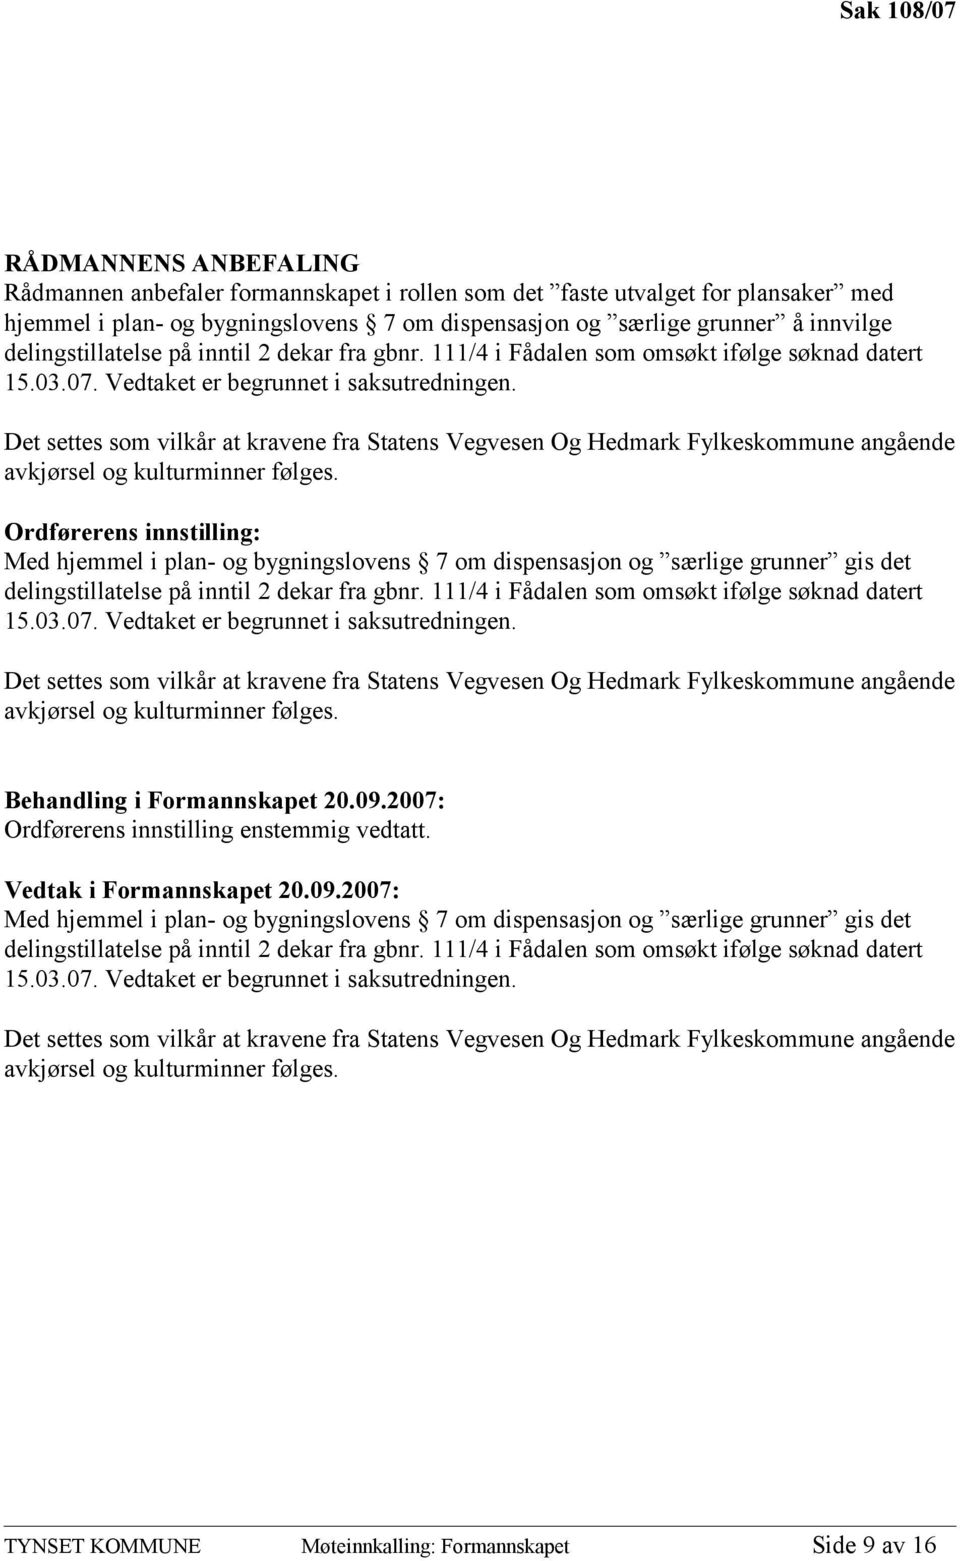 Det settes som vilkår at kravene fra Statens Vegvesen Og Hedmark Fylkeskommune angående avkjørsel og kulturminner følges.